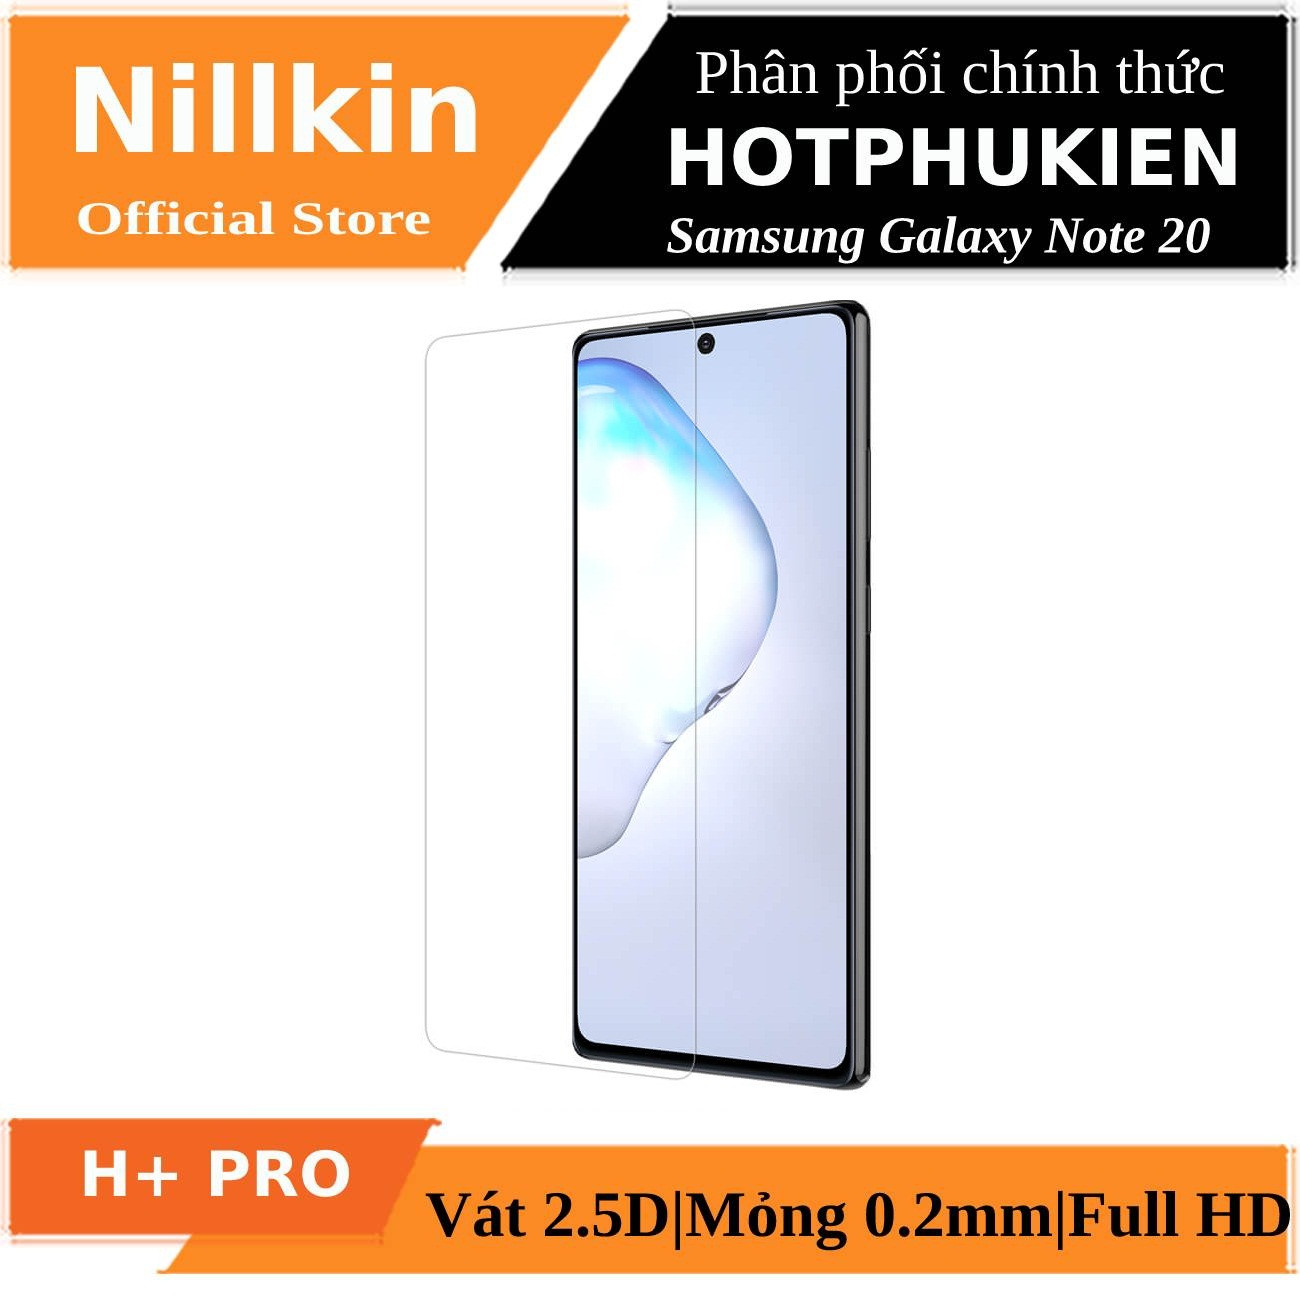 Miếng dán kính cường lực Samsung Galaxy Note 20 hiệu Nillkin Amazing H+ Pro